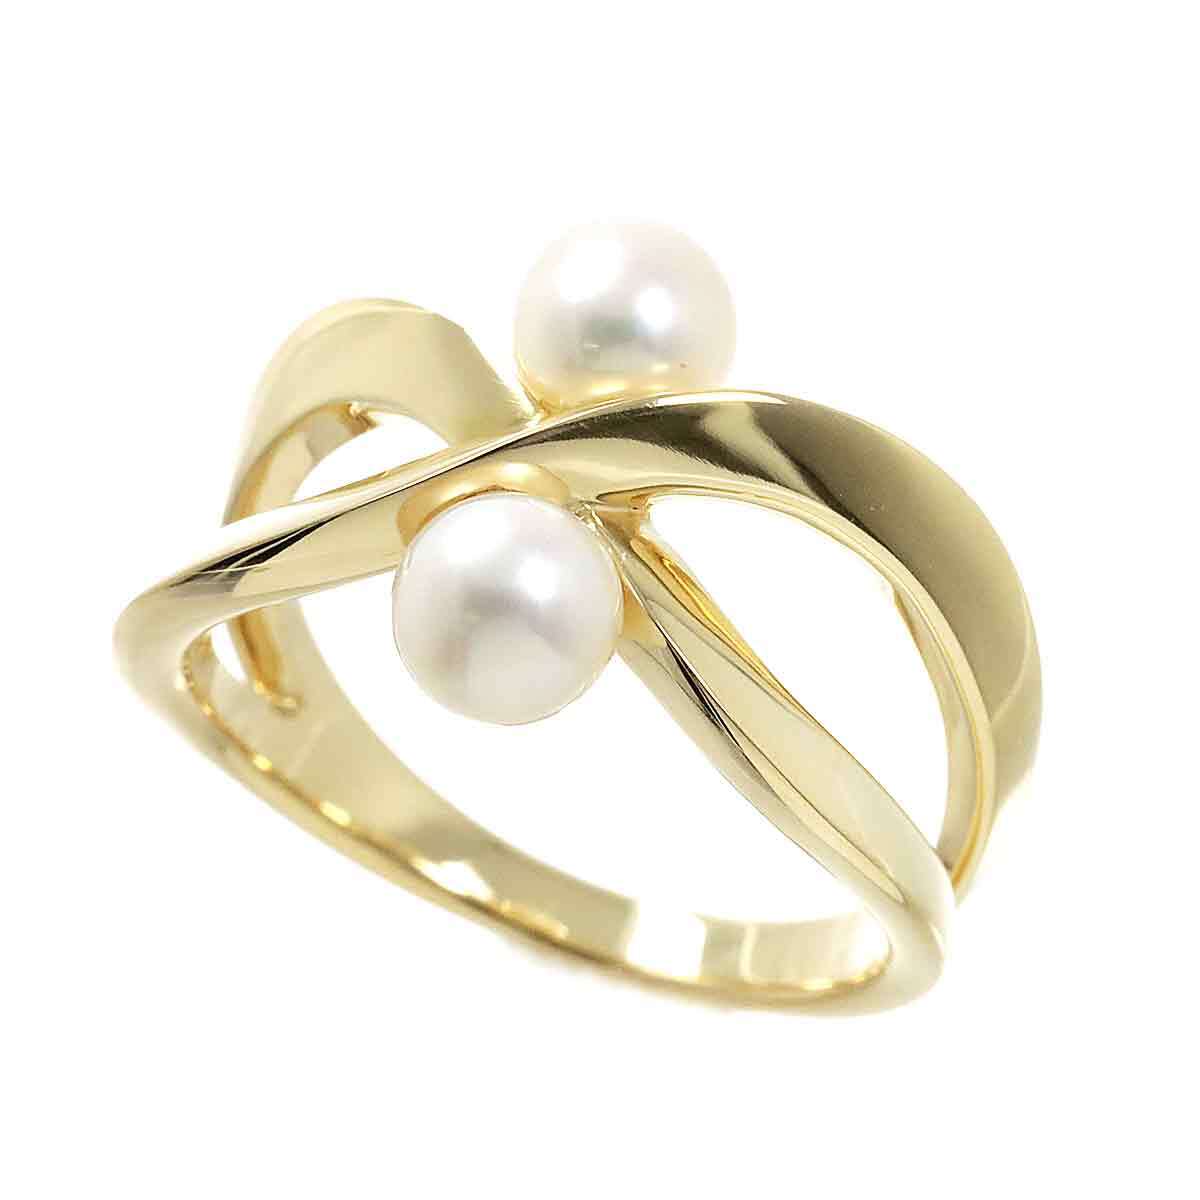  Mikimoto MIKIMOTO 12 номер кольцо Akoya жемчуг 5.2mm K18 YG желтое золото 750 жемчуг кольцо Akoya Pearl Ring 90229041